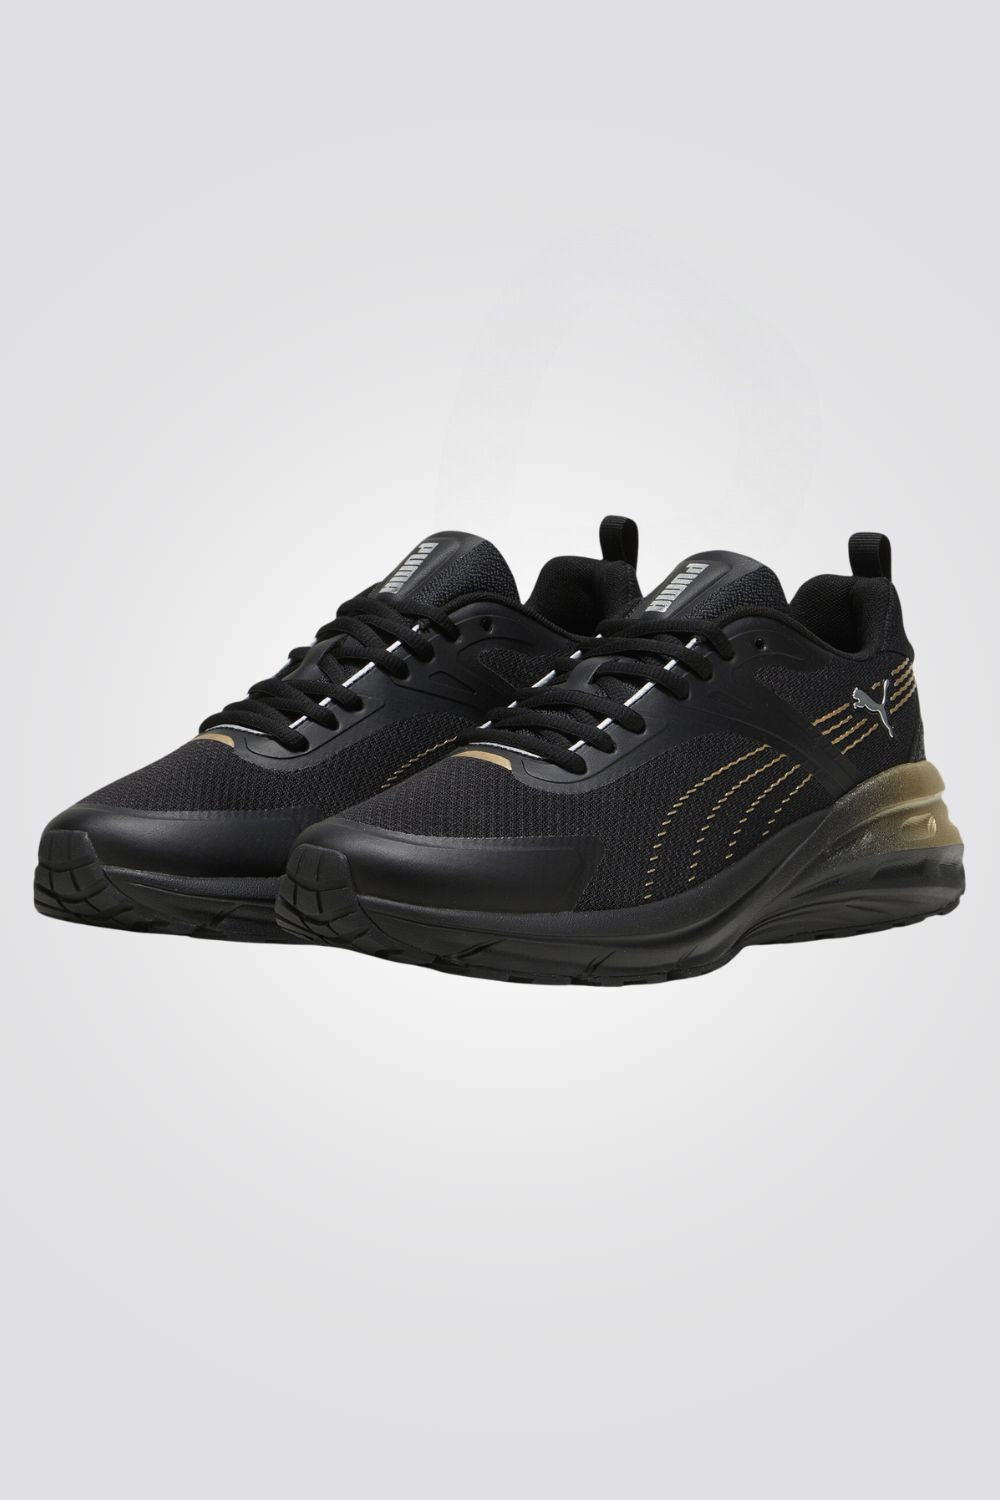 נעלי ספורט לגברים Hypnotic Metallic Sh בצבע שחור וזהב